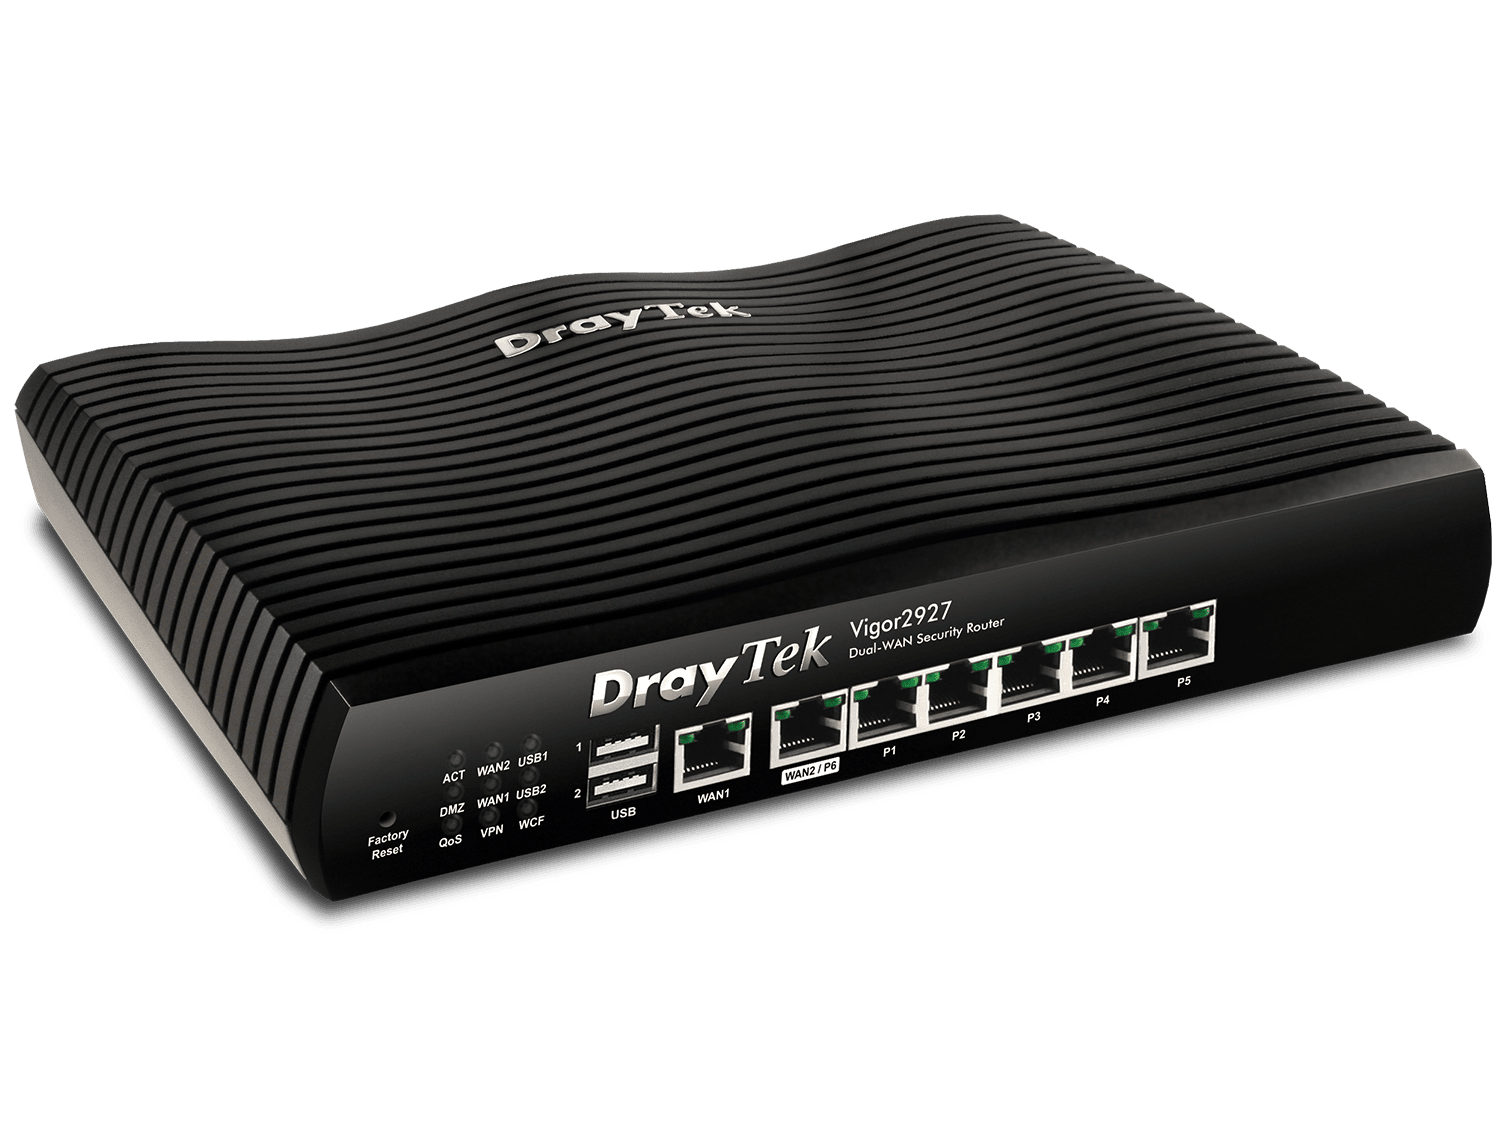 DrayTek Vigor 2927 Dual Wan Secrurity Router